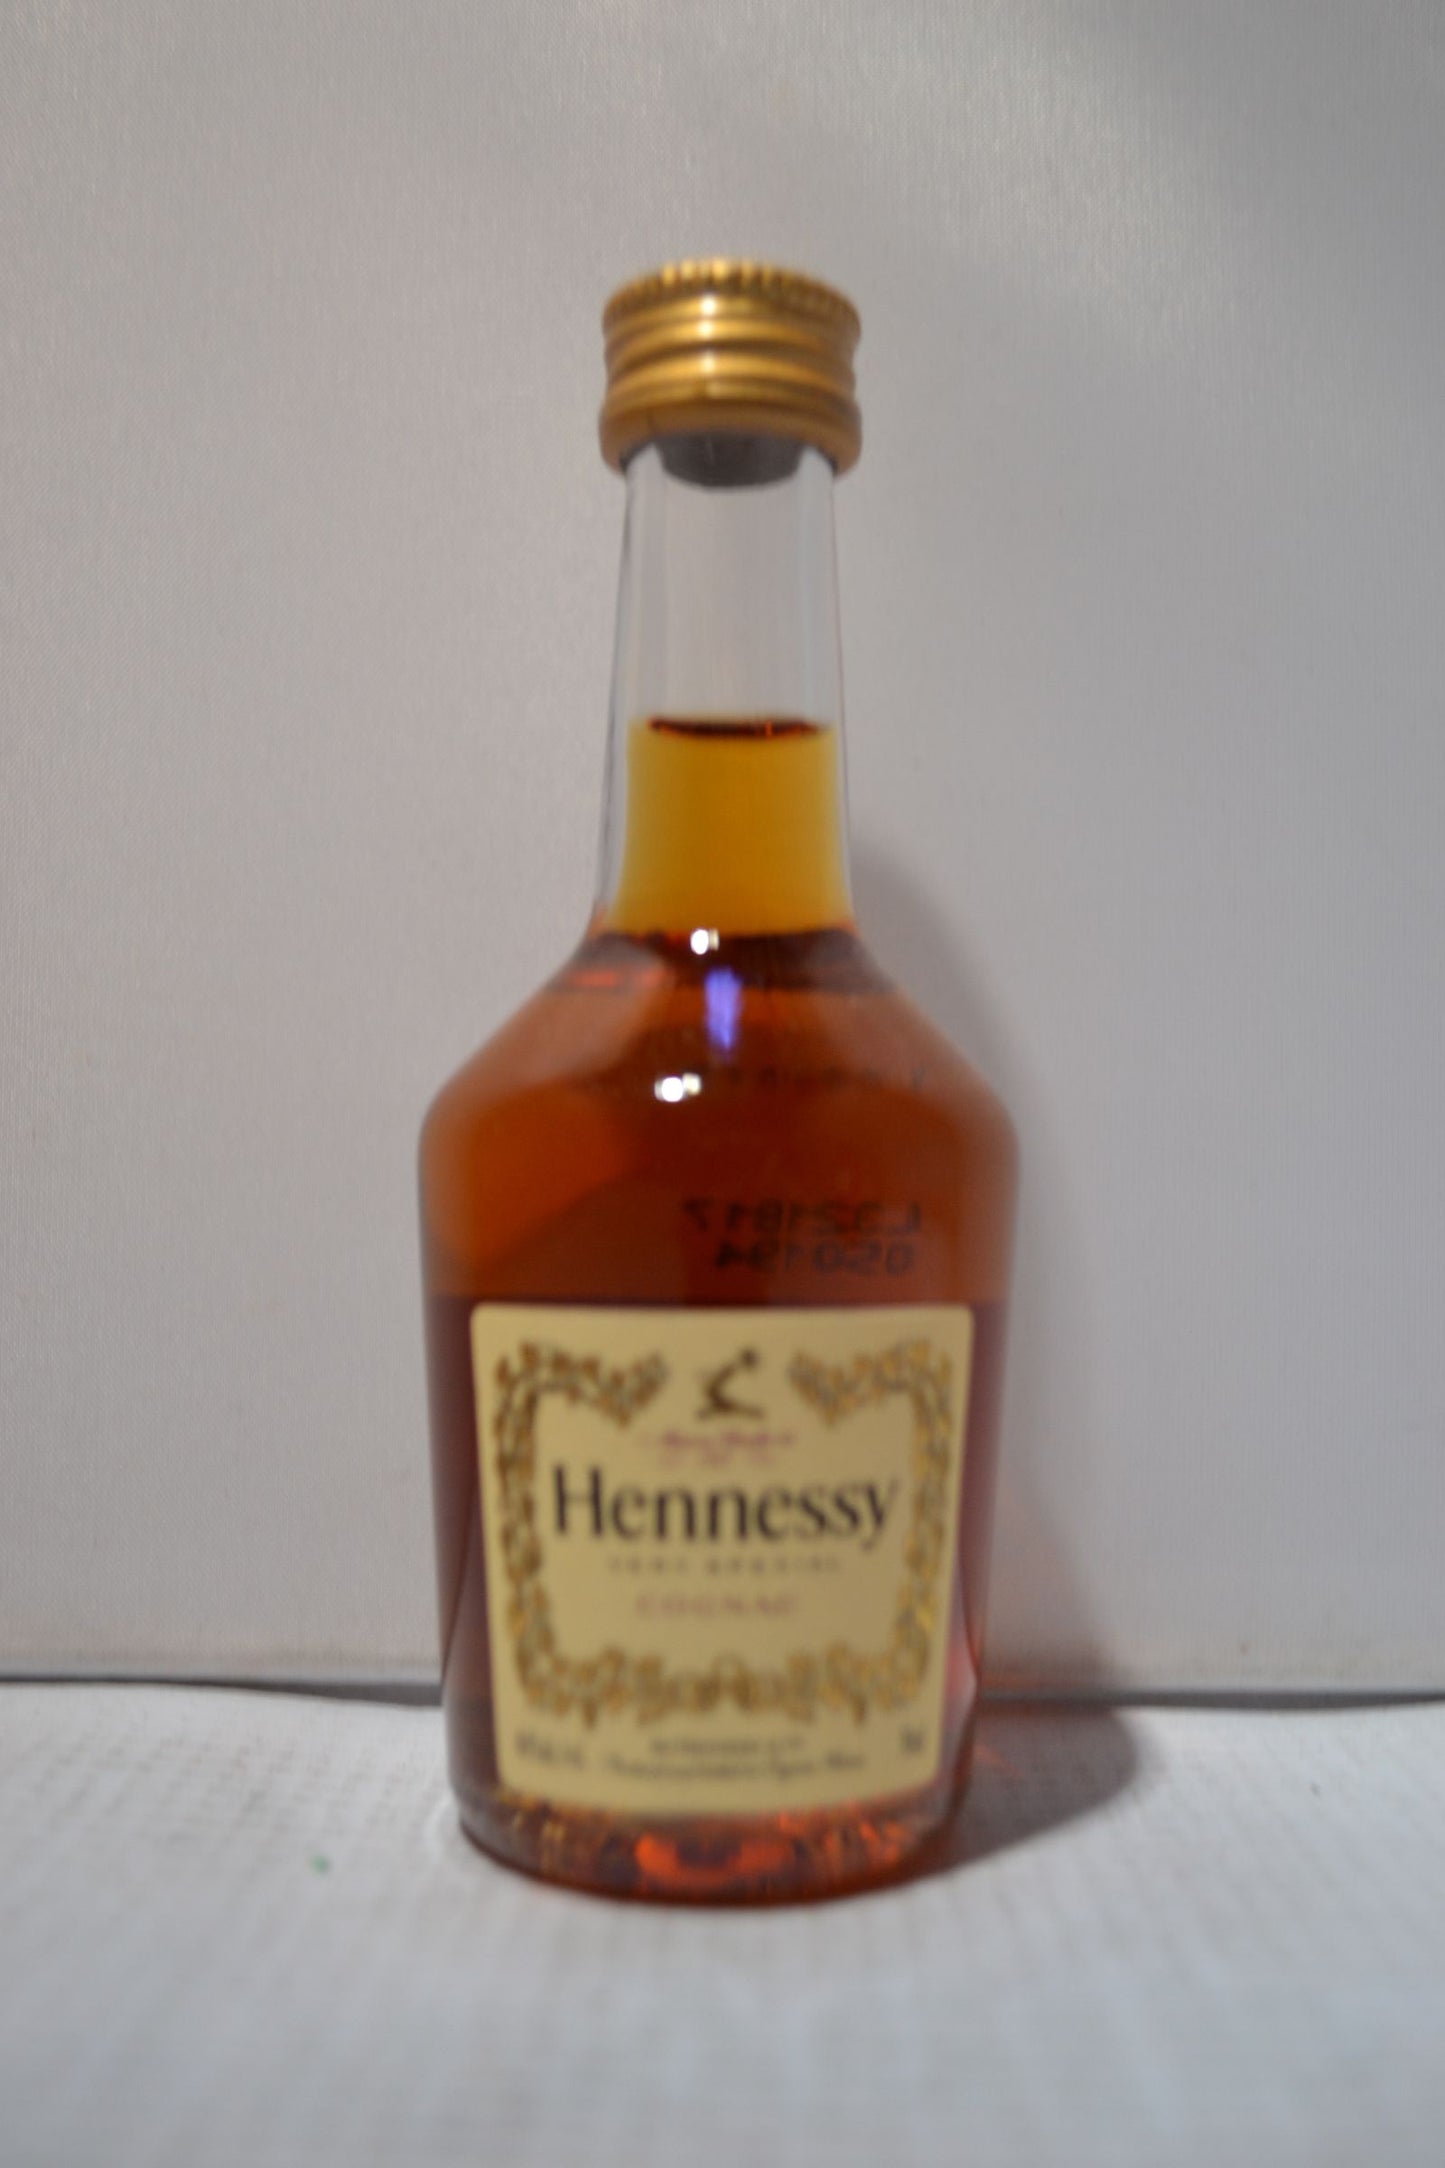 Hennessy VS Cognac - 50 ml bottle